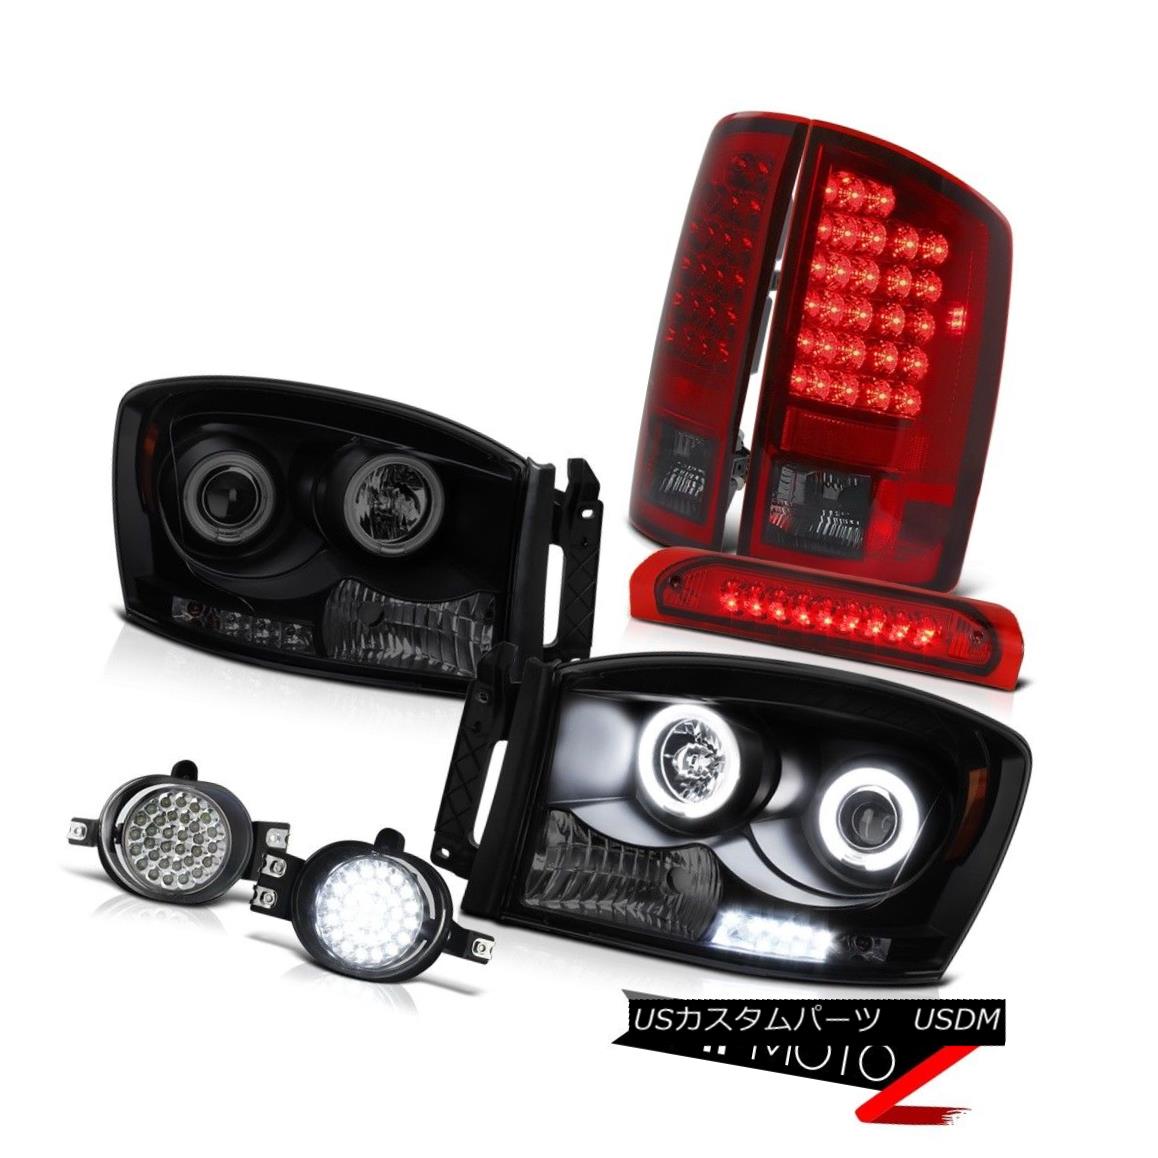 Angel Eye Headlamp LED Bumper Foglight Top Mount Brake Lamps 06 Dodge Ram Dieselカテゴリヘッドライト状態新品メーカーDodge車種Ram 1500発送詳細送料一律 1000円（※北海道、沖縄、離島は省く）商品詳細輸入商品の為、英語表記となります。 Condition: New Brand: Venom Inc. [Fog Light] Switch: [Fog Light] Switch Manufacturer Part Number: OEM#B0906H_2006_A2146 [Fog Light] Bulbs: [Fog Light] Bulbs Interchange Part Number: 68003124/68003125AD, 55077348/55077347AF, 55077475AF [Headlight] Side: Driver&Passenger Side Provided Other Part Number: CH2503180/CH2502180,CH2801147/CH2800147,CH2592121 [Tail Light] Brake: Built-In LED Placement on Vehicle: Left, Right, Front, Rear [Tail Light] Dashboard Light: Error-Free Warranty: 60 Day [Tail Light] Parking: Built-In LED [Headlight] Low Beam Bulb: H1 Bulbs Included [Tail Light] Reverse: Re-use Original 3157 Bulbs [Headlight] DOT & SAE: Approved [Tail Light] Side: Driver & Passenger Included [Headlight] LED Brand: Nichia - Made In Japan [Tail Light] Signal: Built-in LED [Headlight] High Beam Bulb: H1 Bulbs Included Contact Us: TEL: 1-844-884-7847 | HOURS: 9am - 6pm PST [Headlight] Halo Type: Cold Cathode Fluorescent Light Returns: 60-Days LOVE IT or RETURN IT! [Fog Light] Wiring: [Fog Light] Wiring UPC: 7425938440446 EAN: 7425938440446※以下の注意事項をご理解頂いた上で、ご入札下さい※■海外輸入品の為、NC,NRでお願い致します。■フィッテングや車検対応の有無については、画像と説明文よりお客様の方にてご判断をお願いしております。■USのカスタムパーツは国内の純正パーツを取り外した後、接続コネクタが必ずしも一致するとは限らず、加工が必要な場合がございます。■商品説明文中に英語にて”保障”に関する記載があっても適応はされませんので、ご理解ください。■初期不良（到着より7日以内）のみ保証対象とします。ただし、取り付け後は、保証対象外とします。■海外倉庫から到着した製品を、再度国内で検品を行い、日本郵便または佐川急便にて発送となります。■お届けまでには、2〜3週間程頂いております。ただし、天候次第で多少遅れが発生する場合もあります。■商品落札後のお客様のご都合によるキャンセルはお断りしておりますが、商品落札金額の30％の手数料をいただいた場合のみお受けいたします。■他にもUSパーツを多数出品させて頂いておりますので、ご覧頂けたらと思います。■USパーツの輸入代行も行っておりますので、ショップに掲載されていない商品でもお探しする事が可能です!!お気軽にお問い合わせ下さい。&nbsp;